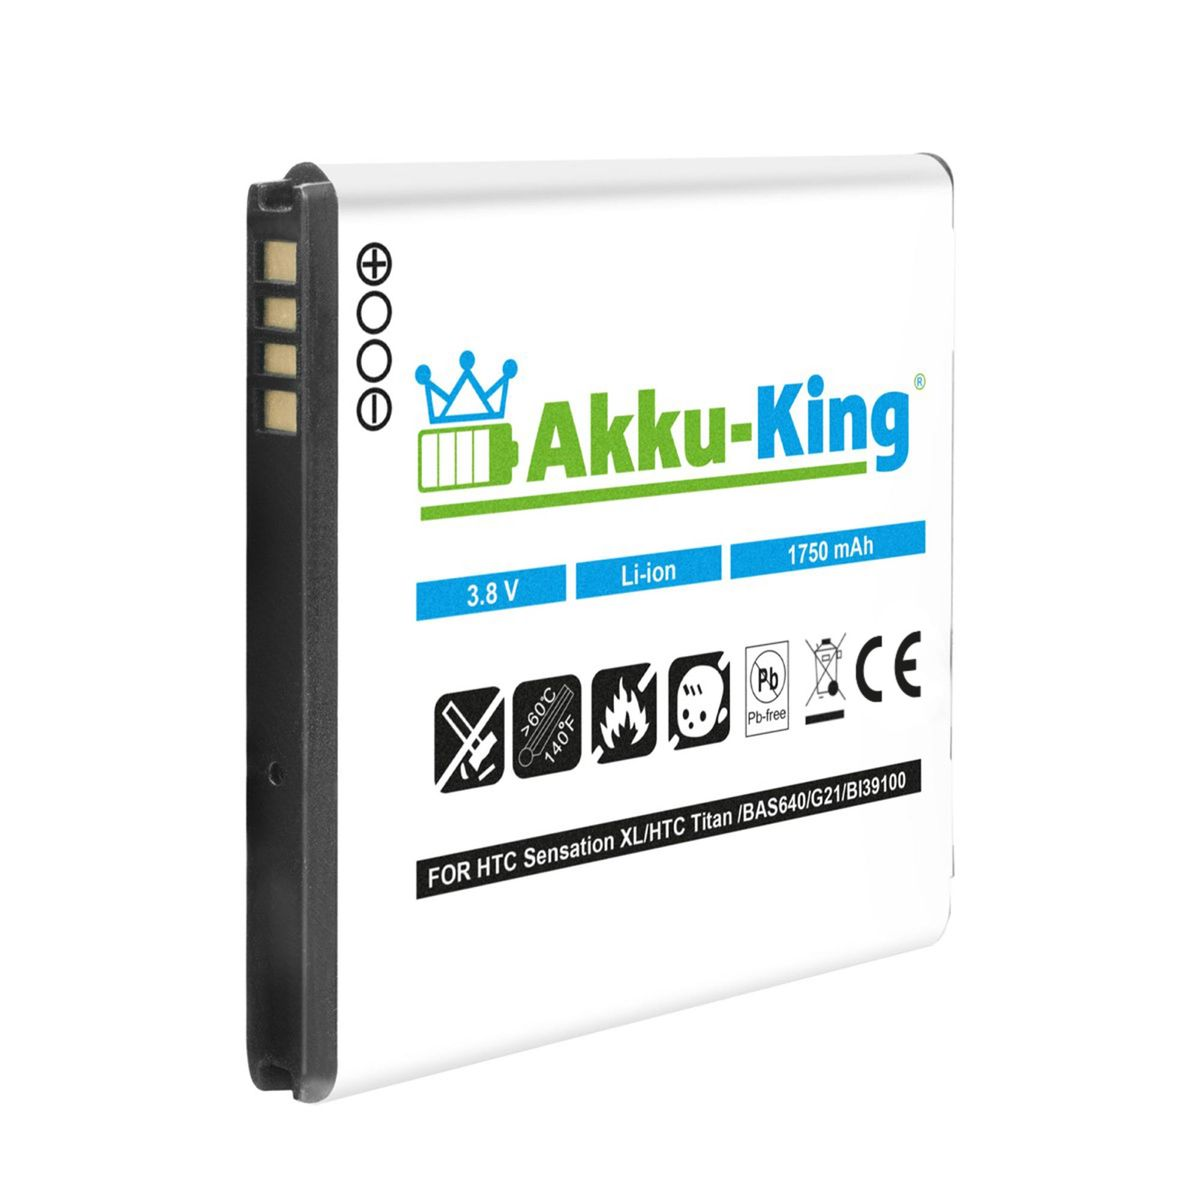 mit Li-Ion BA Handy-Akku, 3.8 HTC Akku AKKU-KING kompatibel Volt, 1750mAh S640